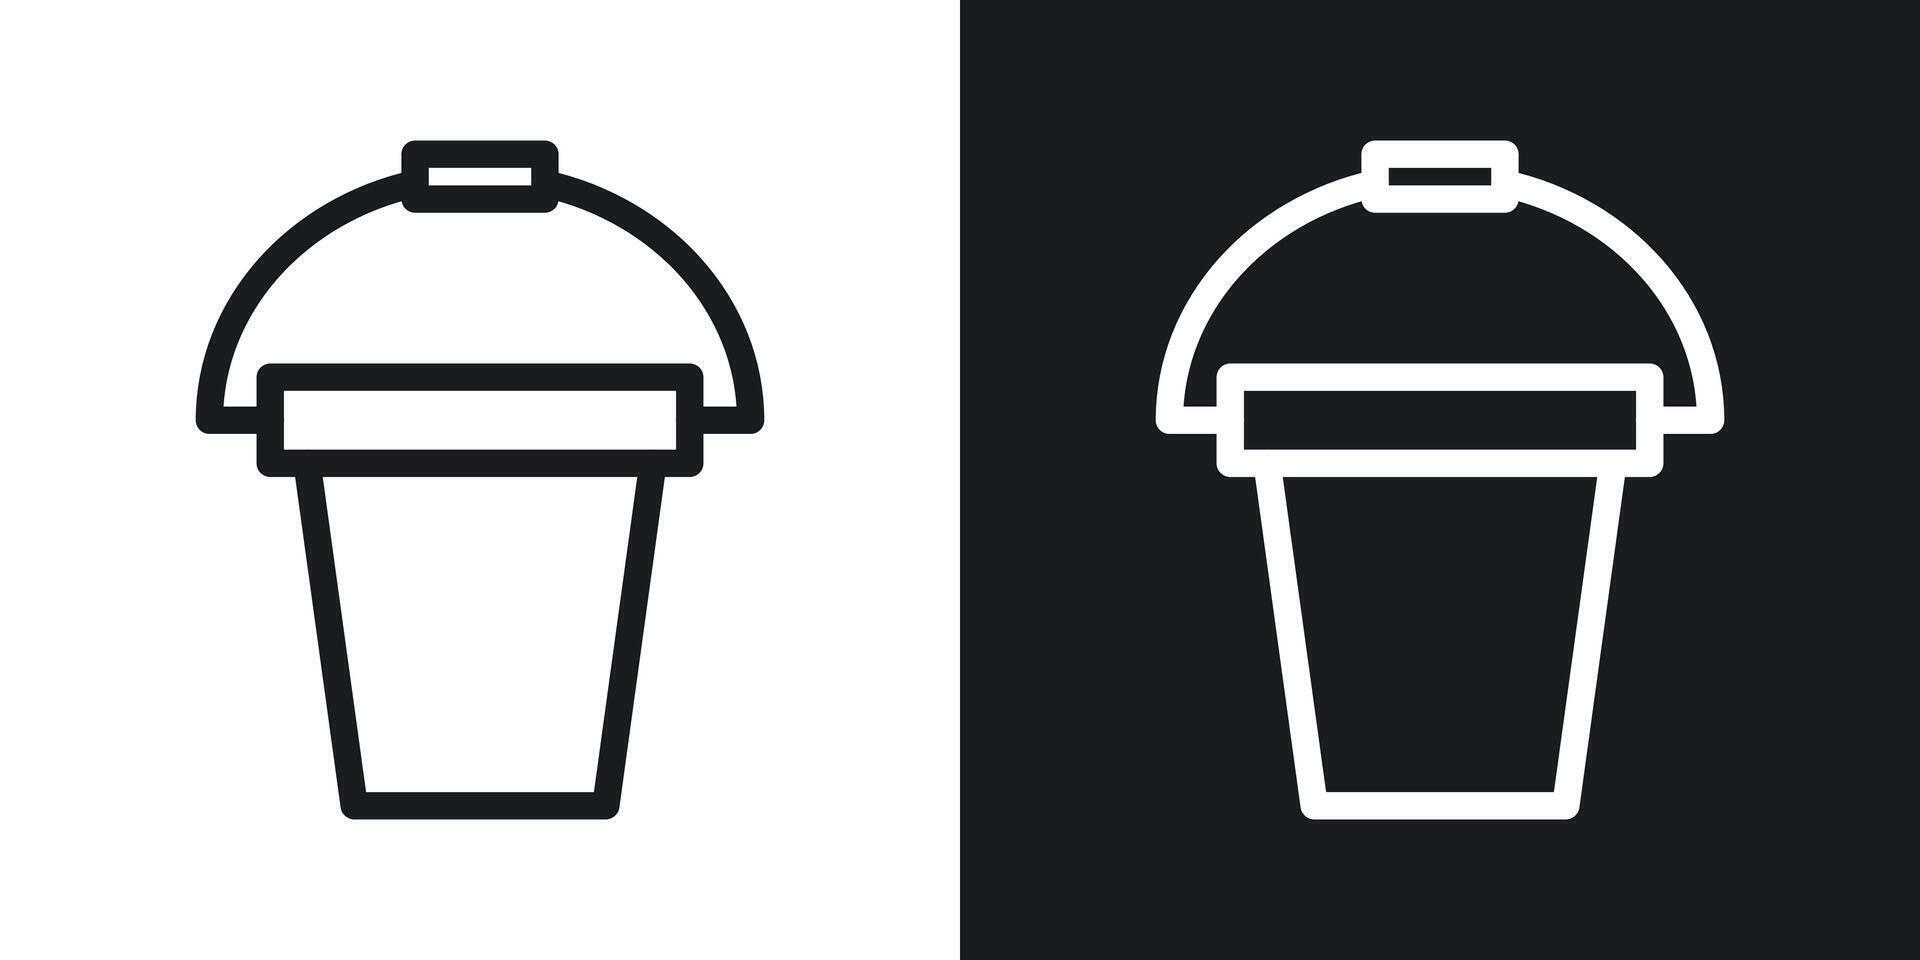 Bucket icon set vector